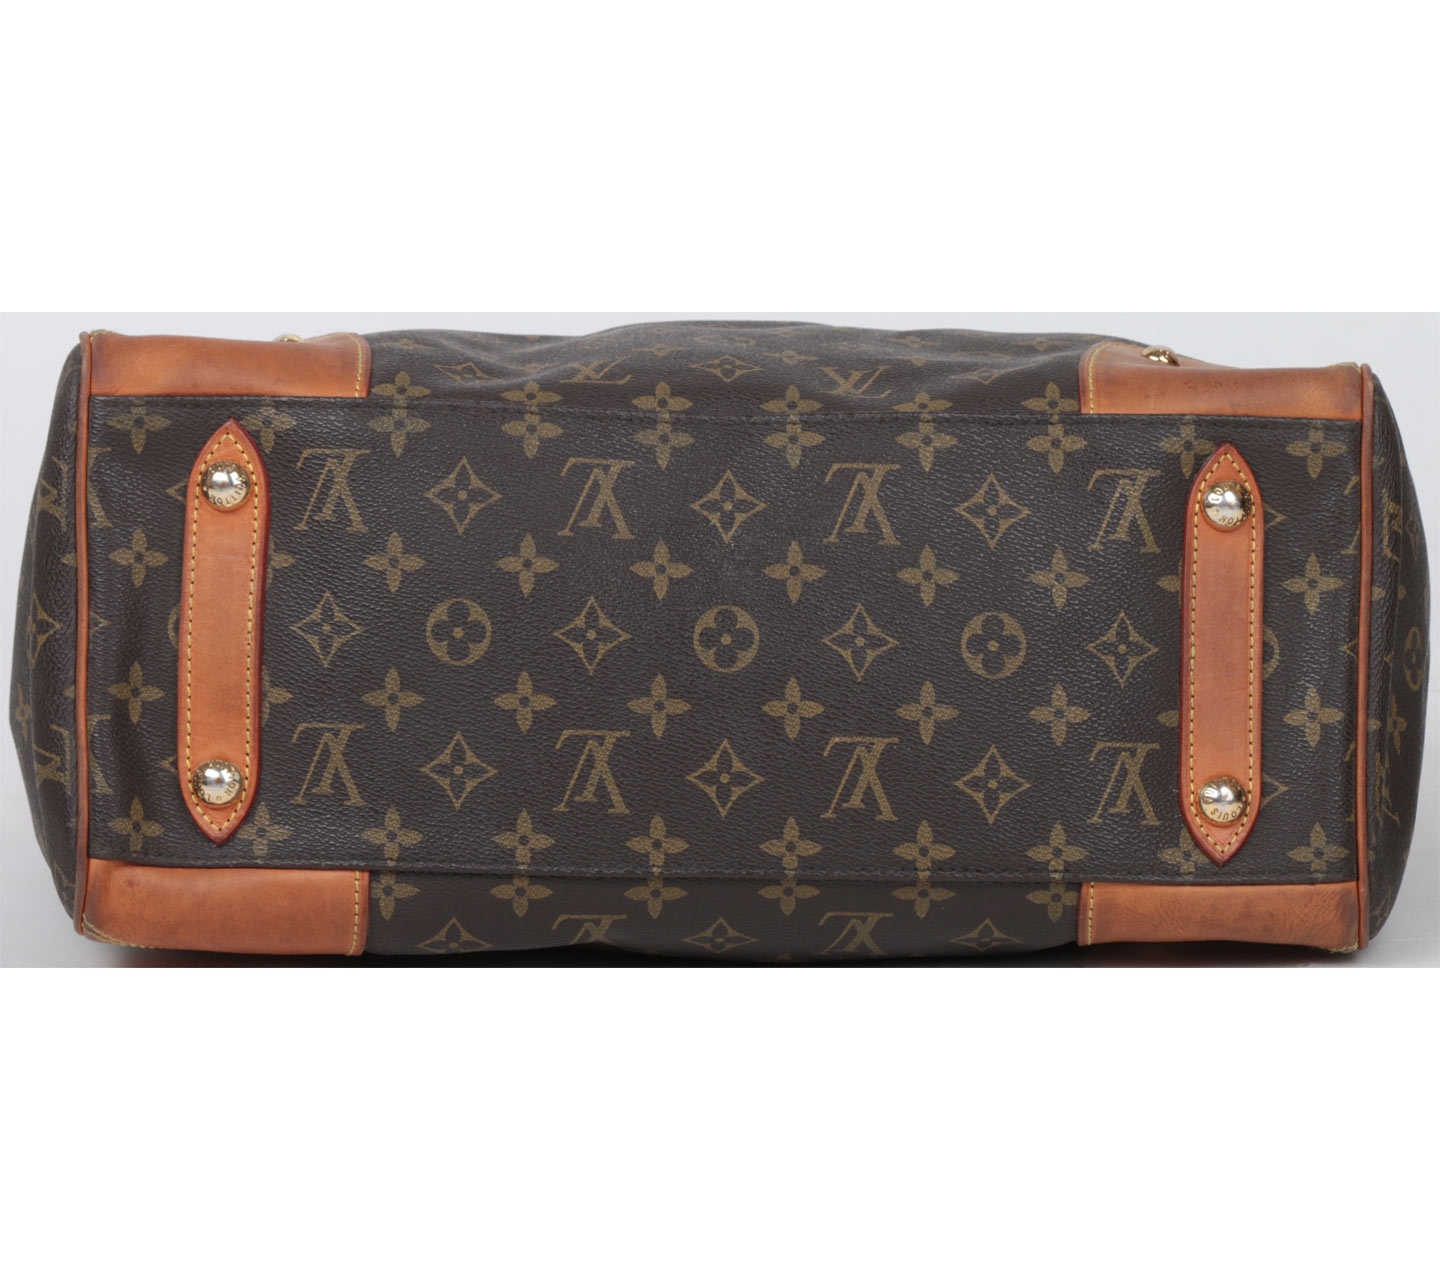 Louis Vuitton Brown Handbag